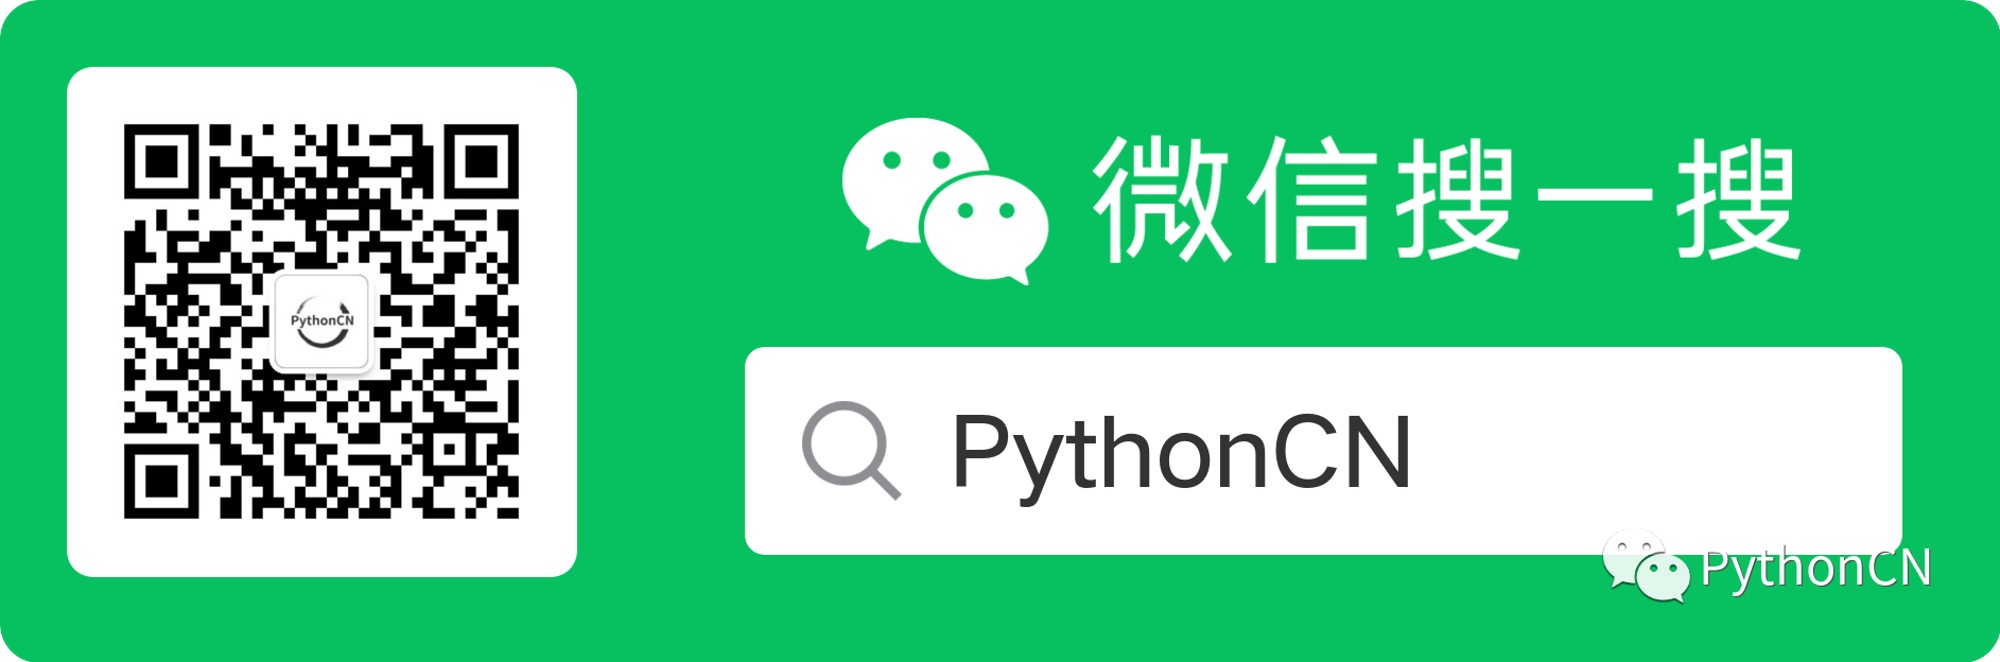 关注PythonCN.png